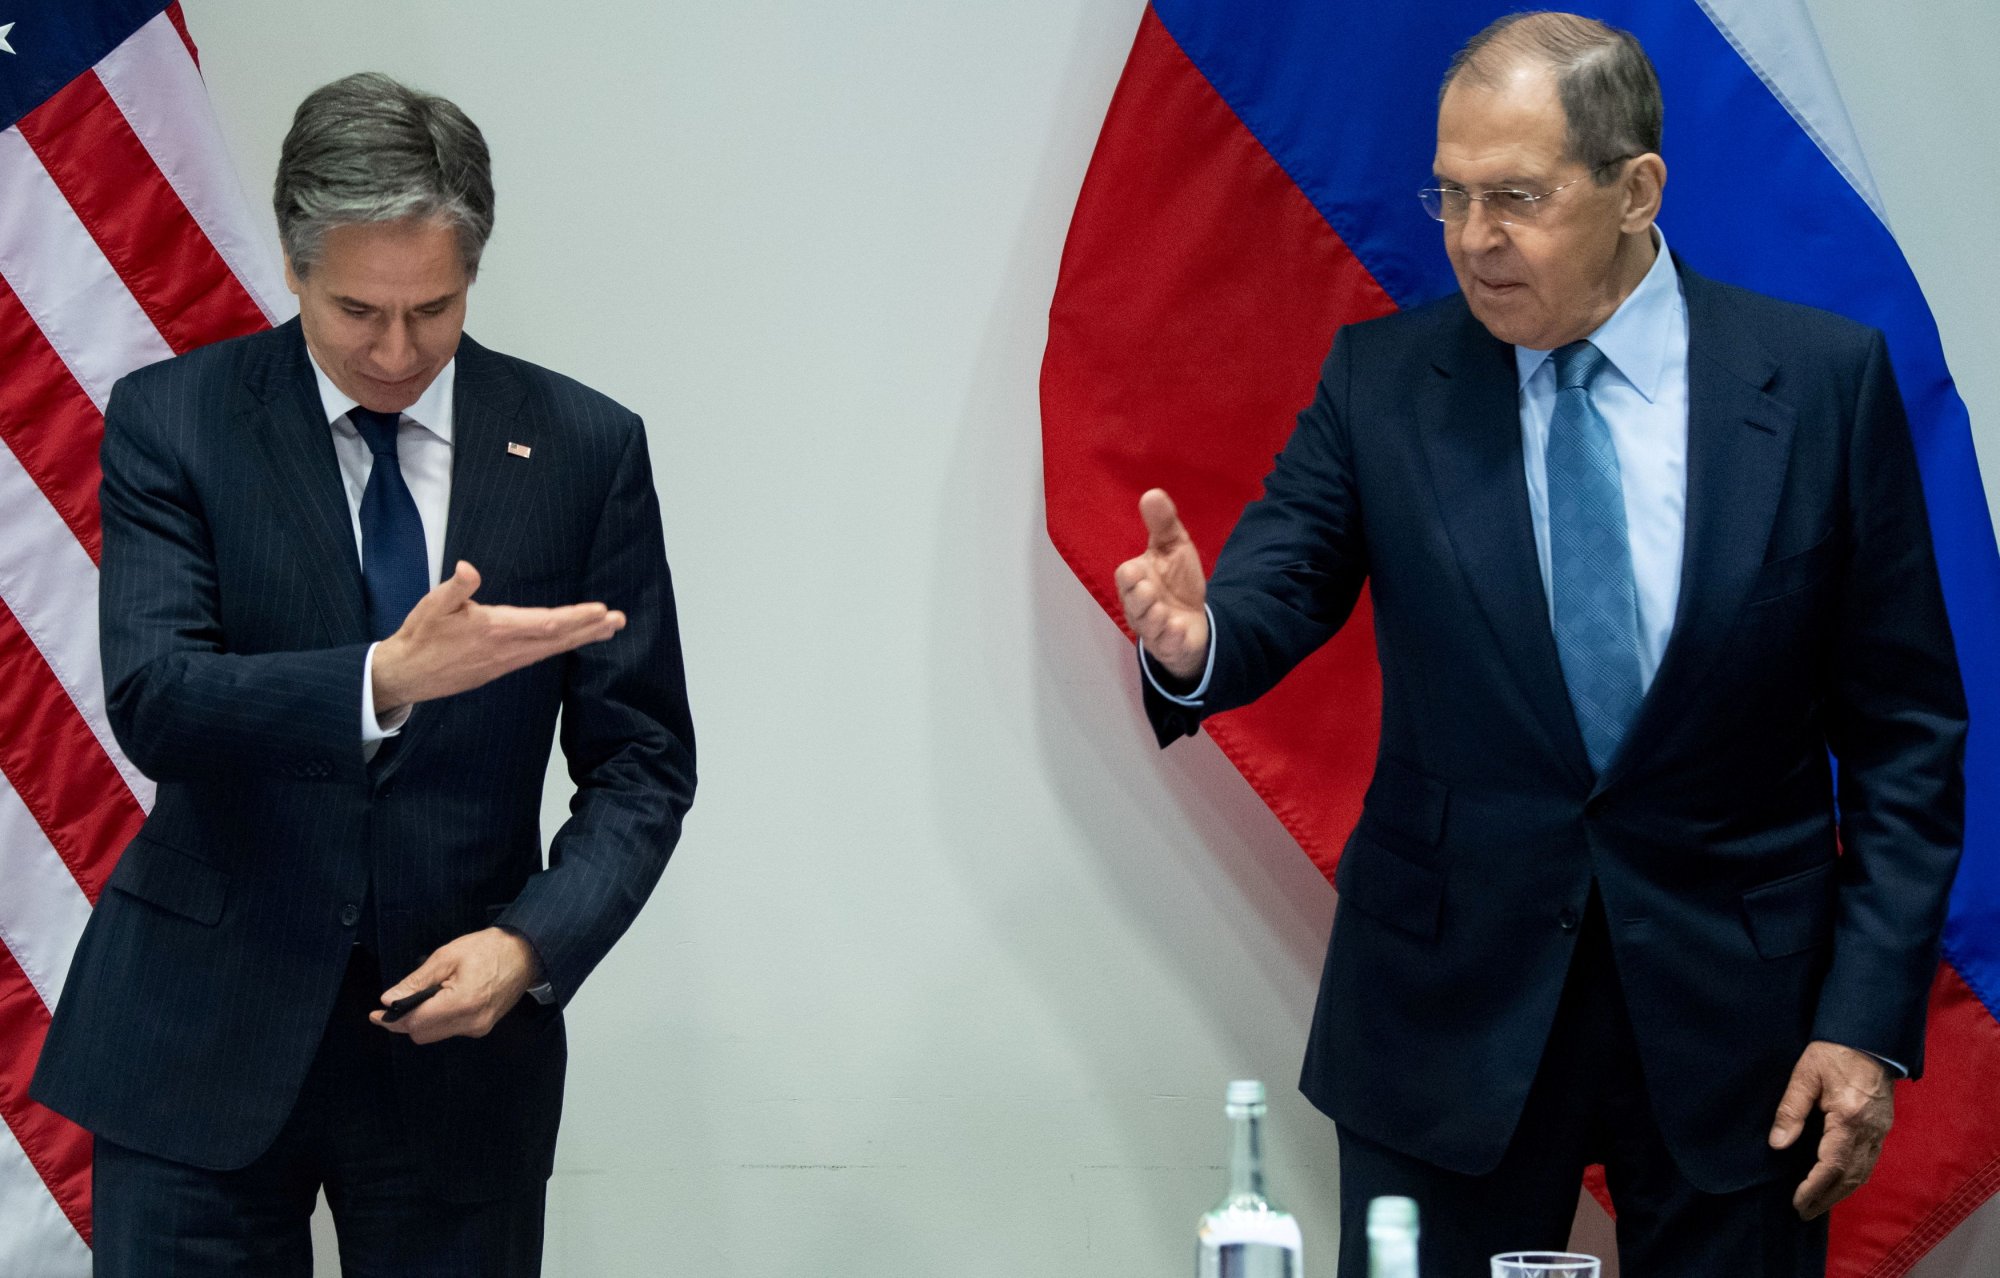 Σε ποιο μέρος του πλανήτη ΗΠΑ και Ρωσία αναγκάζονται να δώσουν τα χέρια πίσω από τις κάμερες